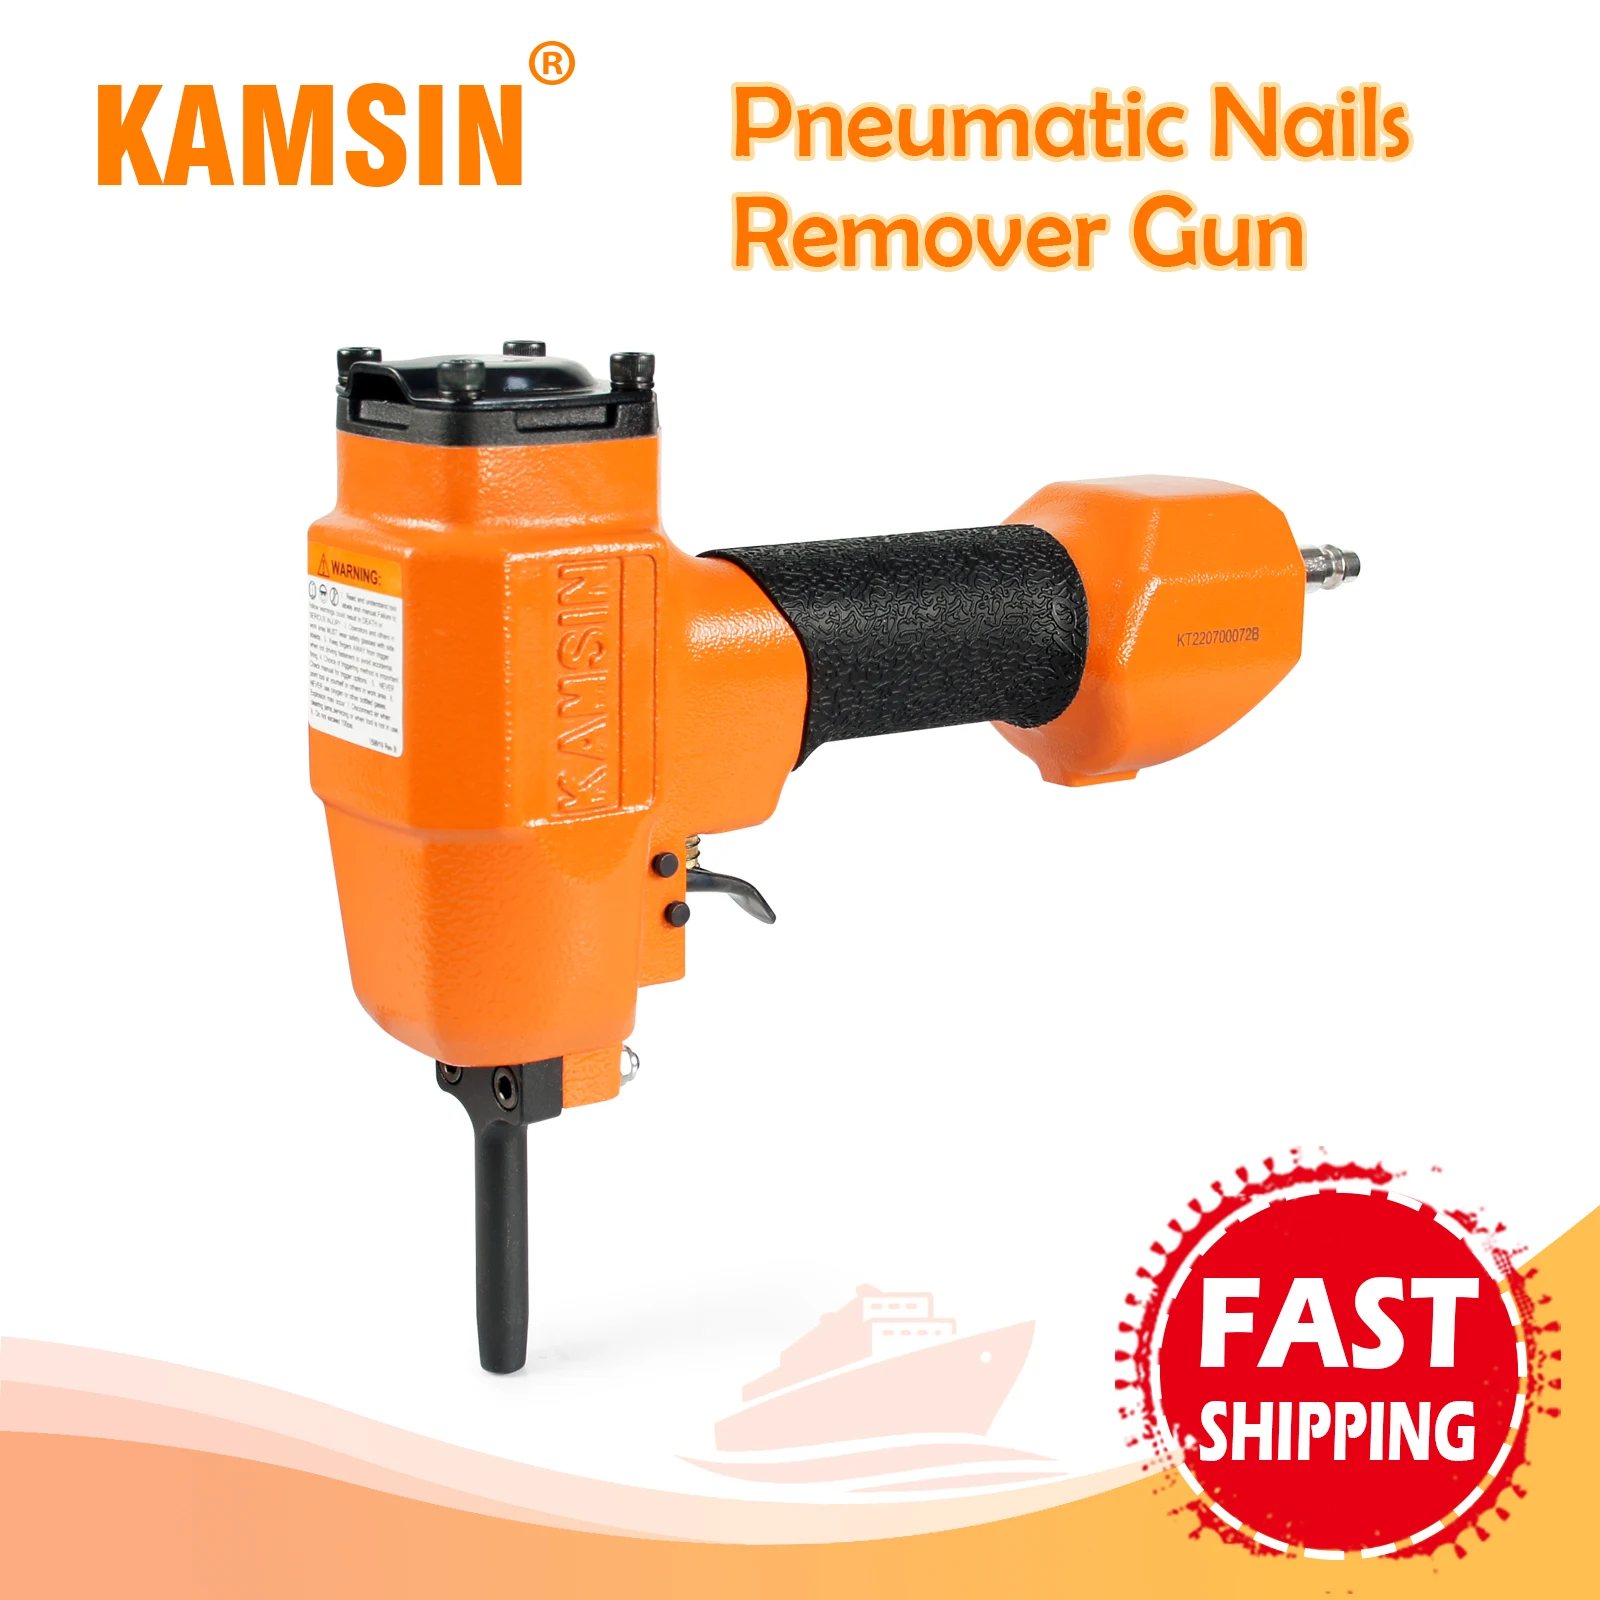 KAMSIN KT38 Pneumatic Nails Puller, Air Nails Remover Gun,Professional Punch Nails Shank Diameter of 3-5 mm, for Denailing